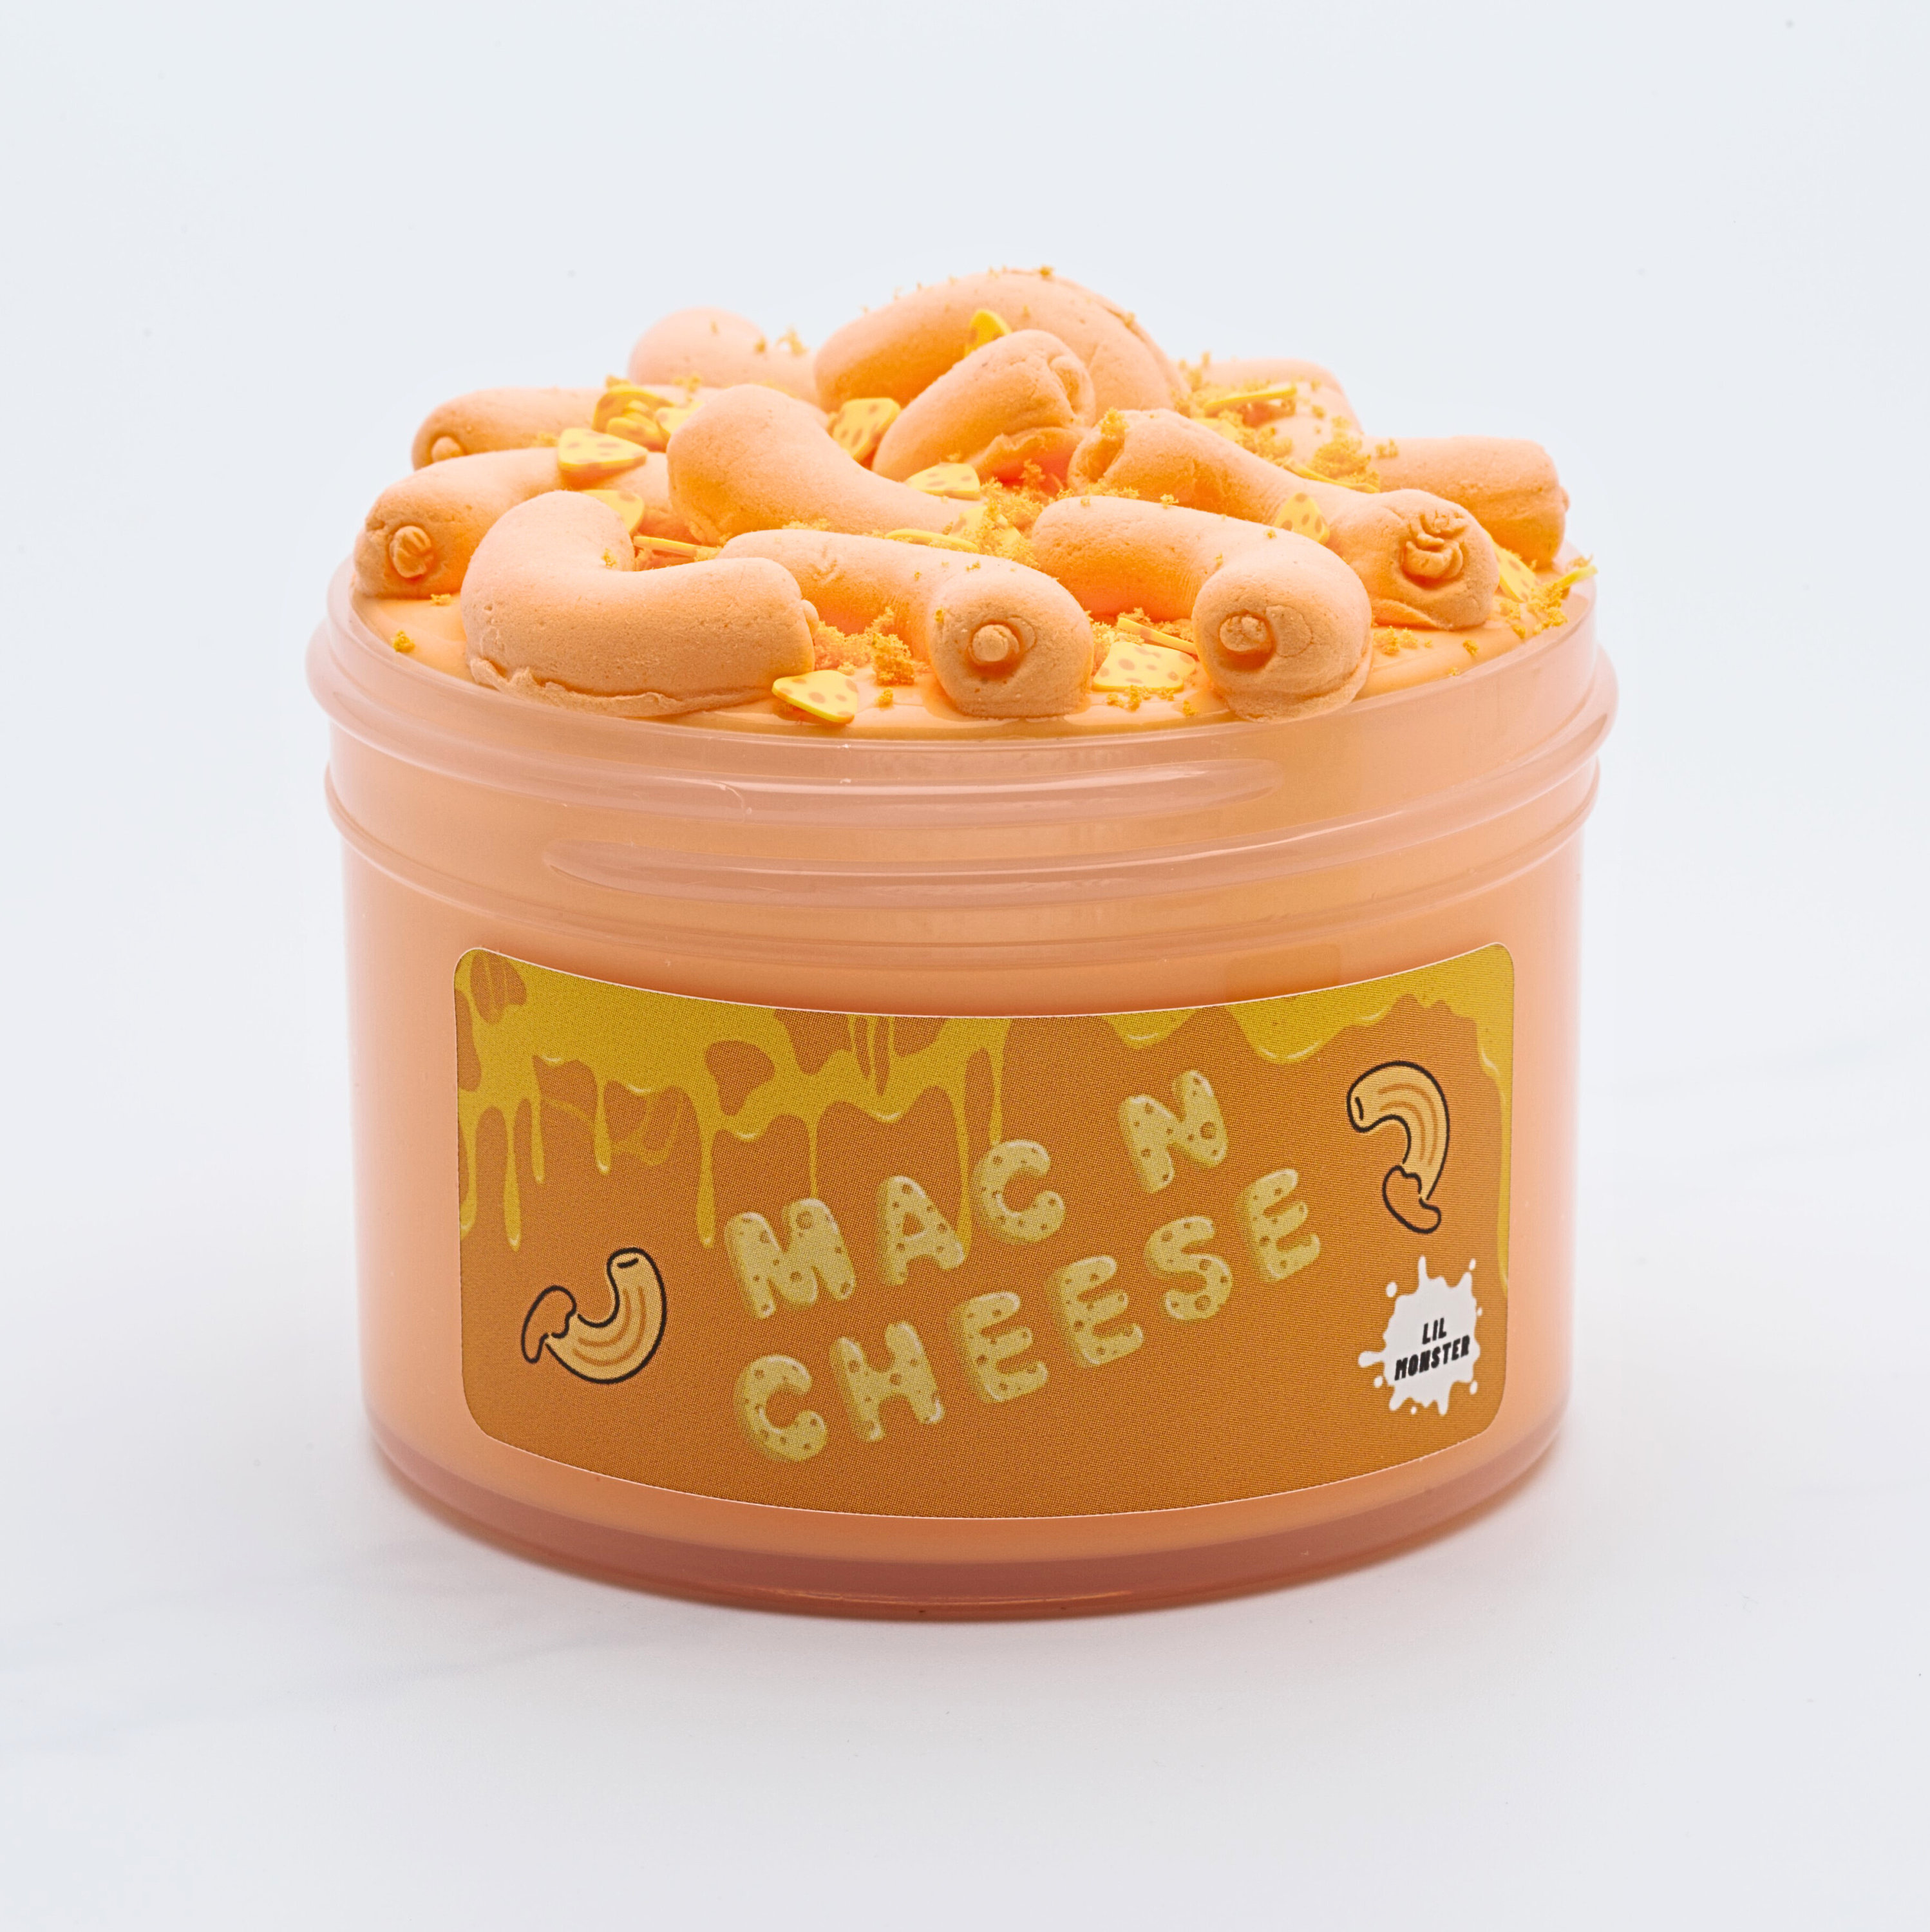 Loaded Mac n Cheese DIY Slime Kit